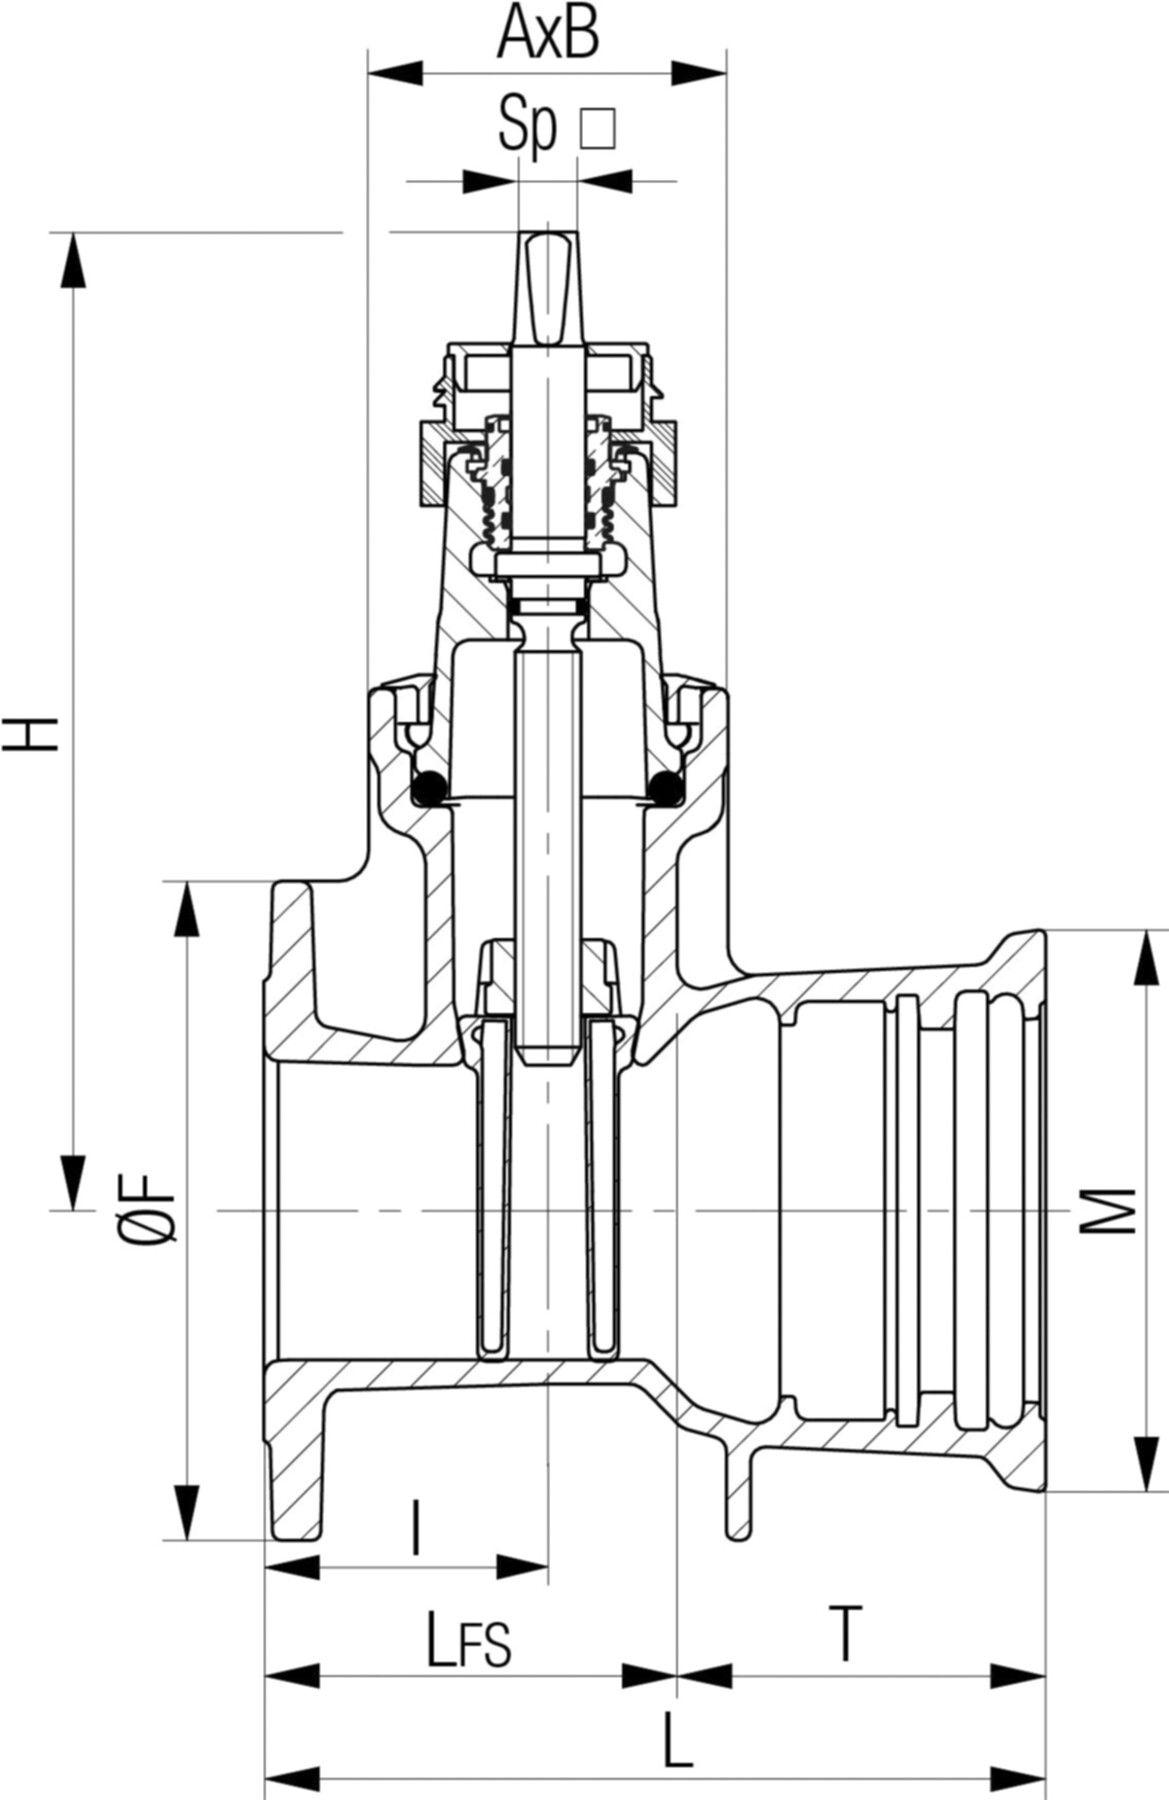 Flansch-/Steckmuffenschieber Fig. 5455 DN 80 PN 10/16 - Von Roll Armaturen